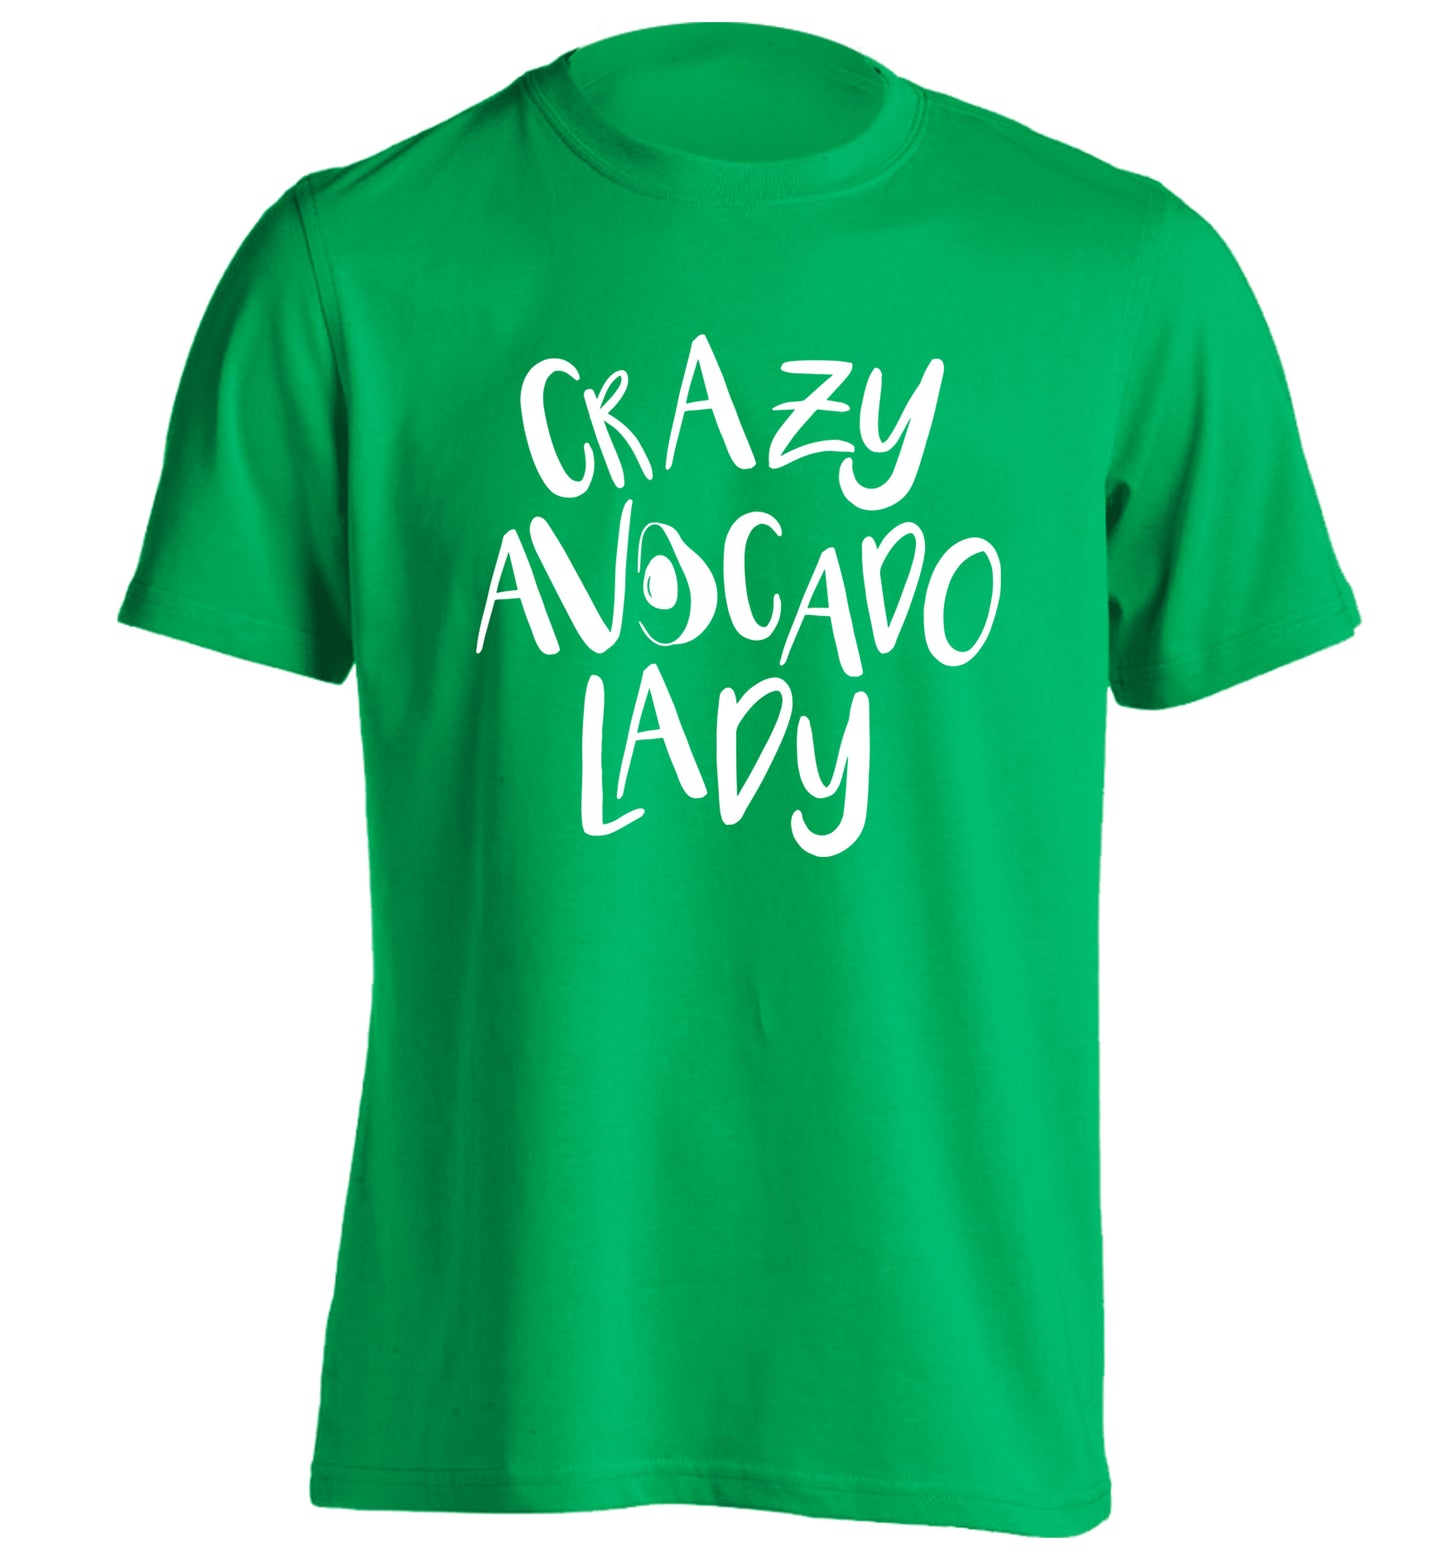 Crazy avocado lady adults unisex green Tshirt 2XL